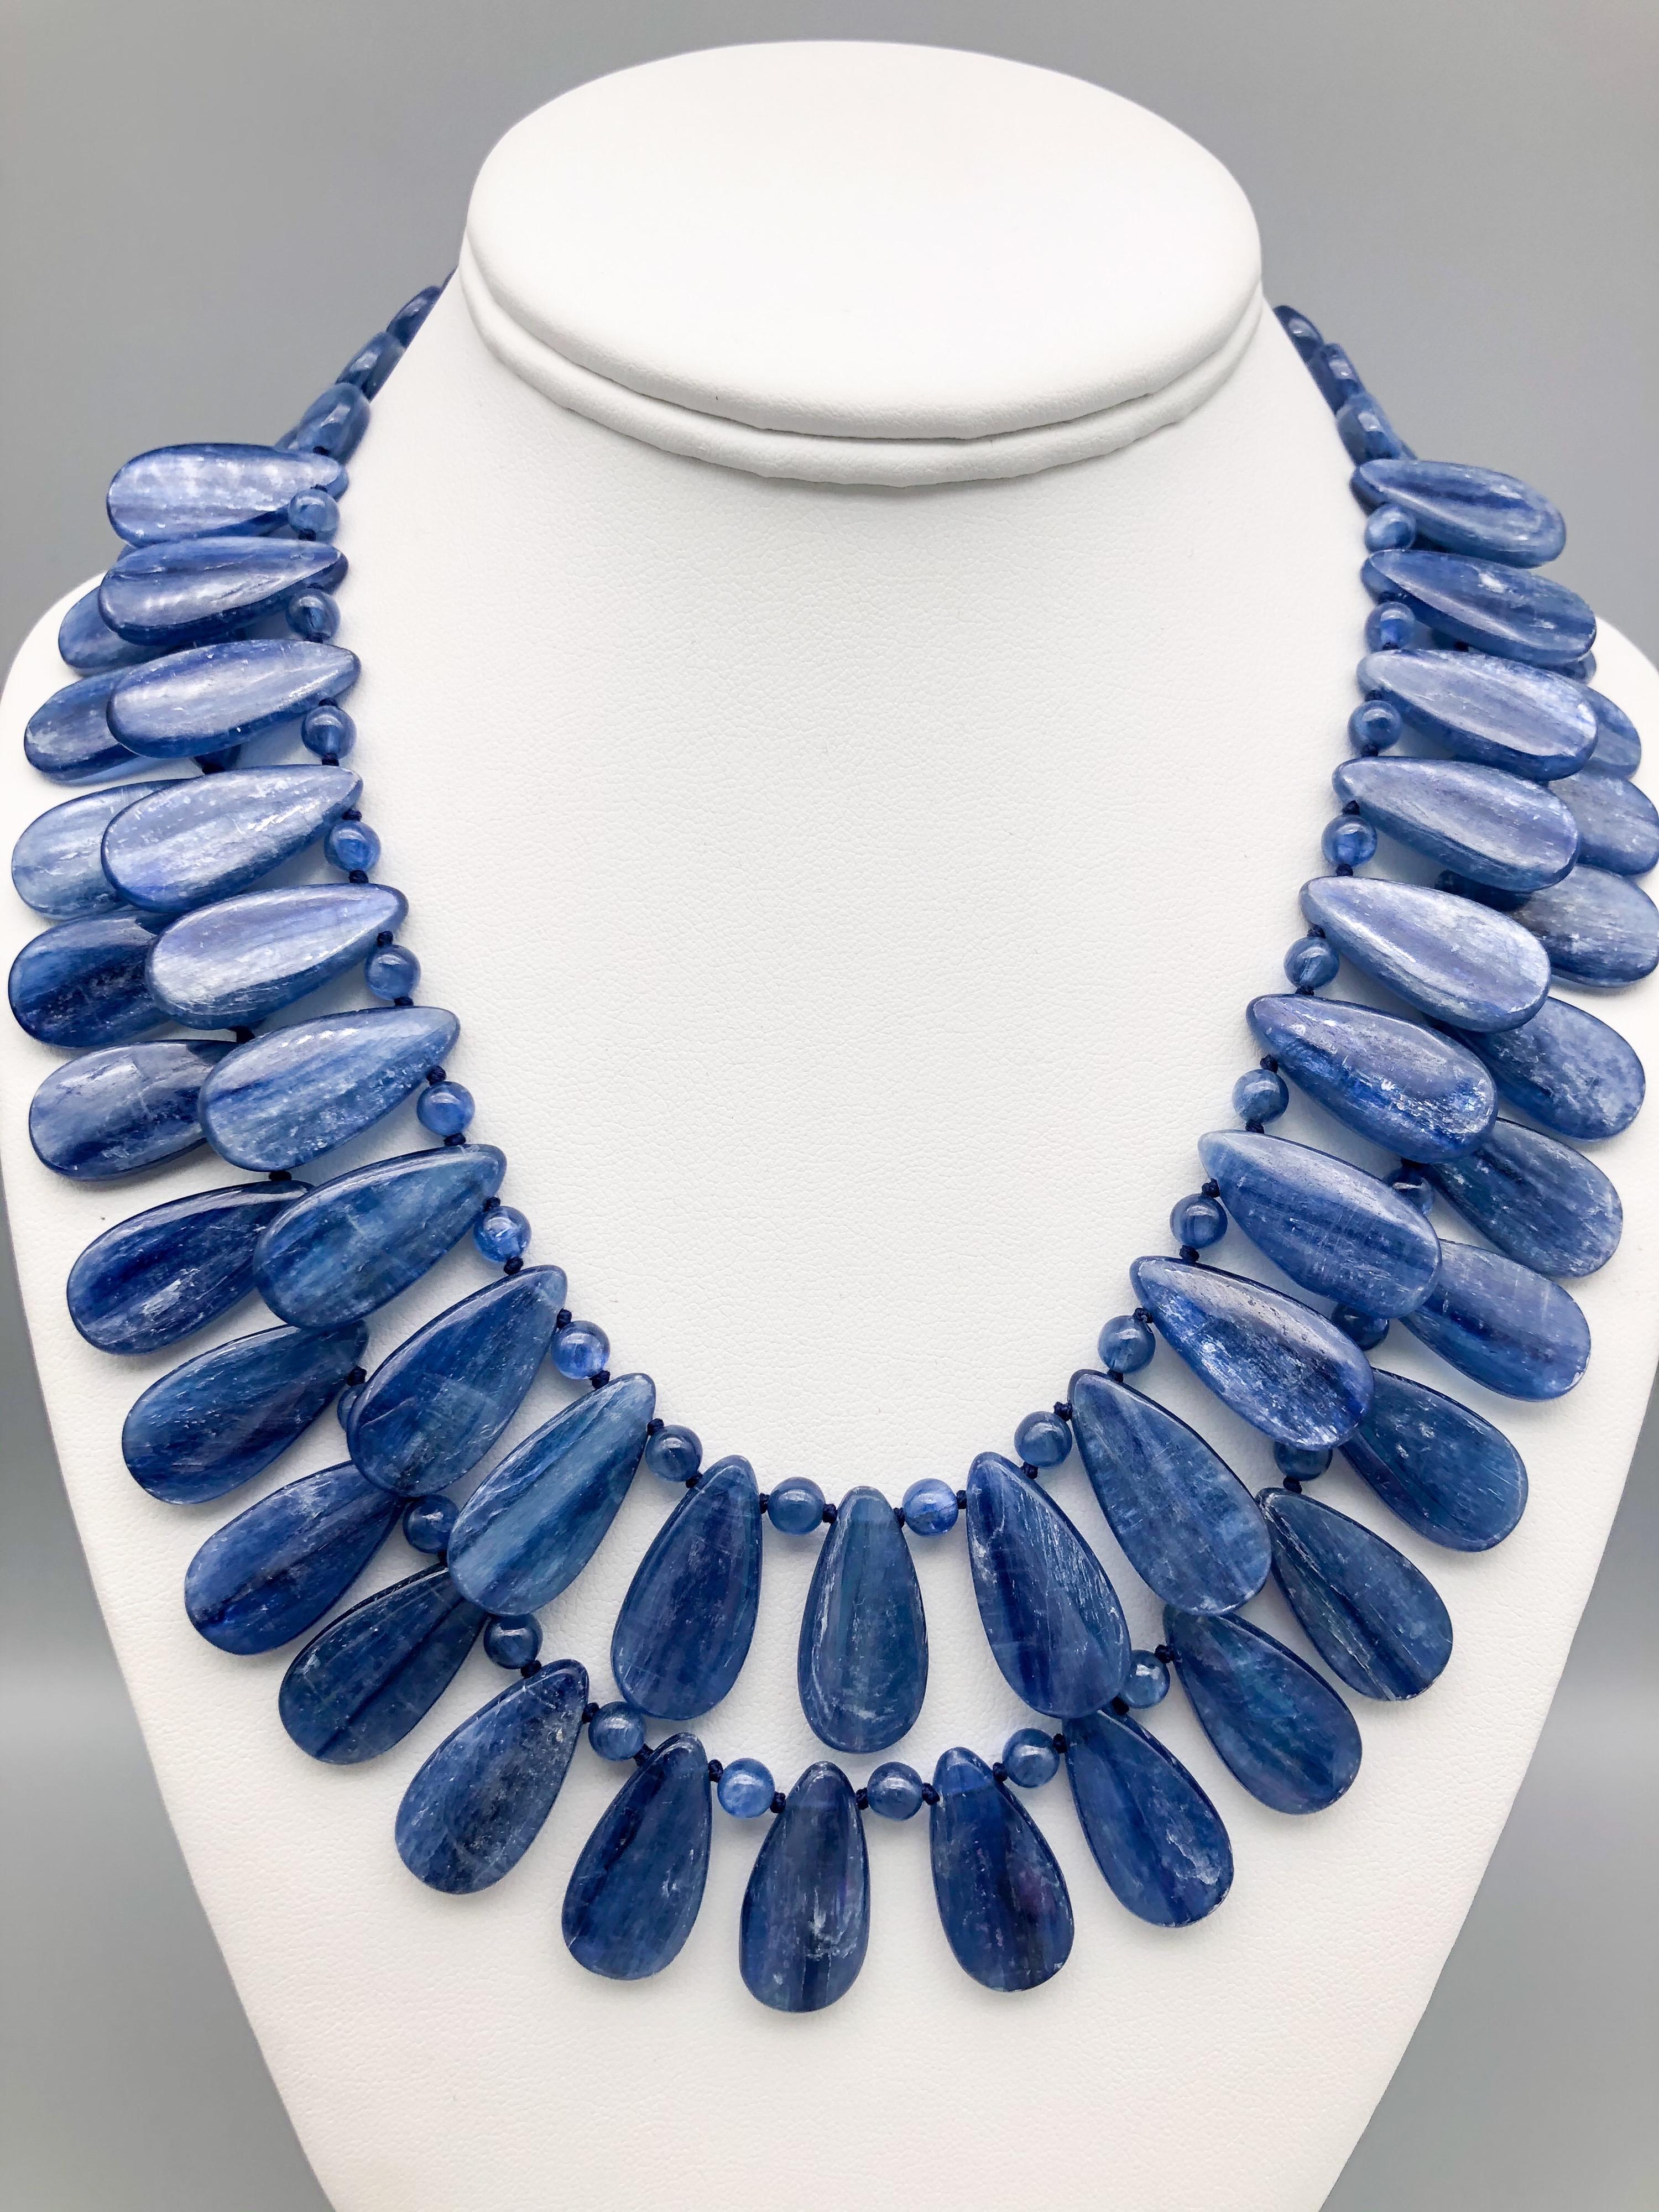 Einzigartig

Kyanit ist ein Edelstein, der wegen seiner satten und leuchtenden blauen Farbe geschätzt wird, die noch kräftiger und lebendiger ist als die des traditionellen Saphirs. Wenn er facettiert ist, kann Kyanit oft als Saphir verkauft werden,